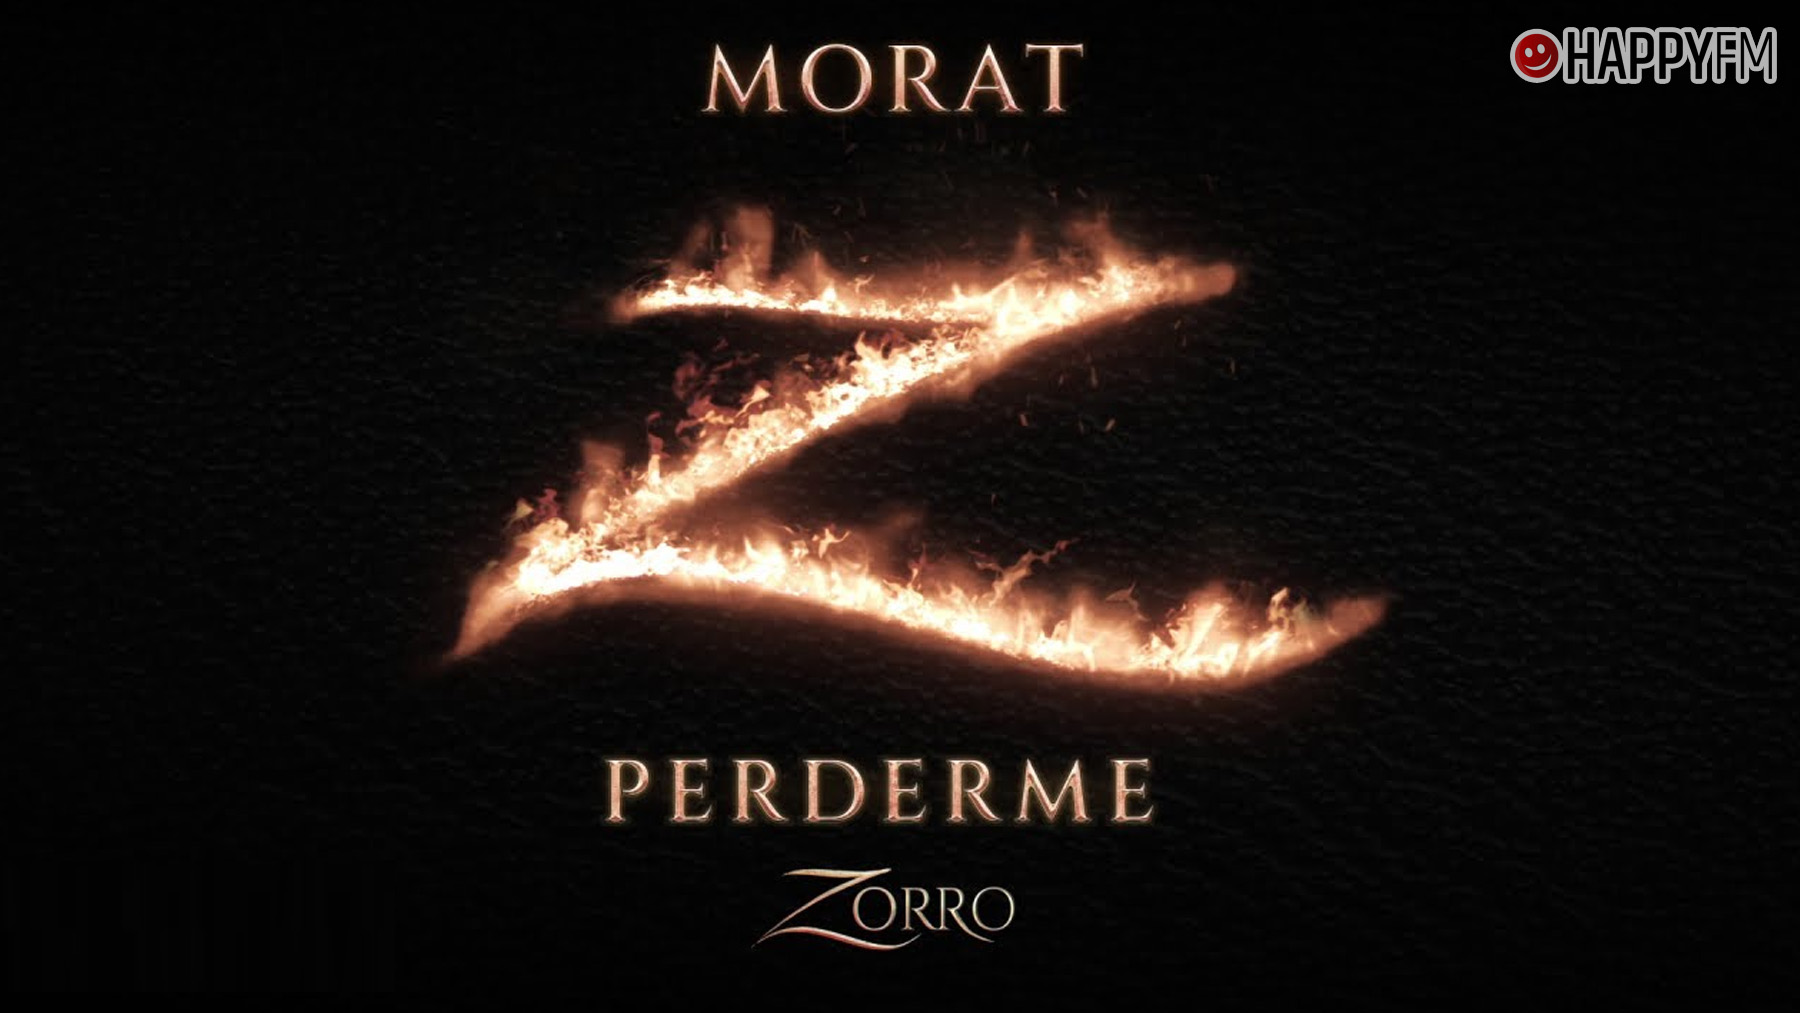 ‘Perderme’, de Morat (BSO ‘Zorro’): letra y vídeo